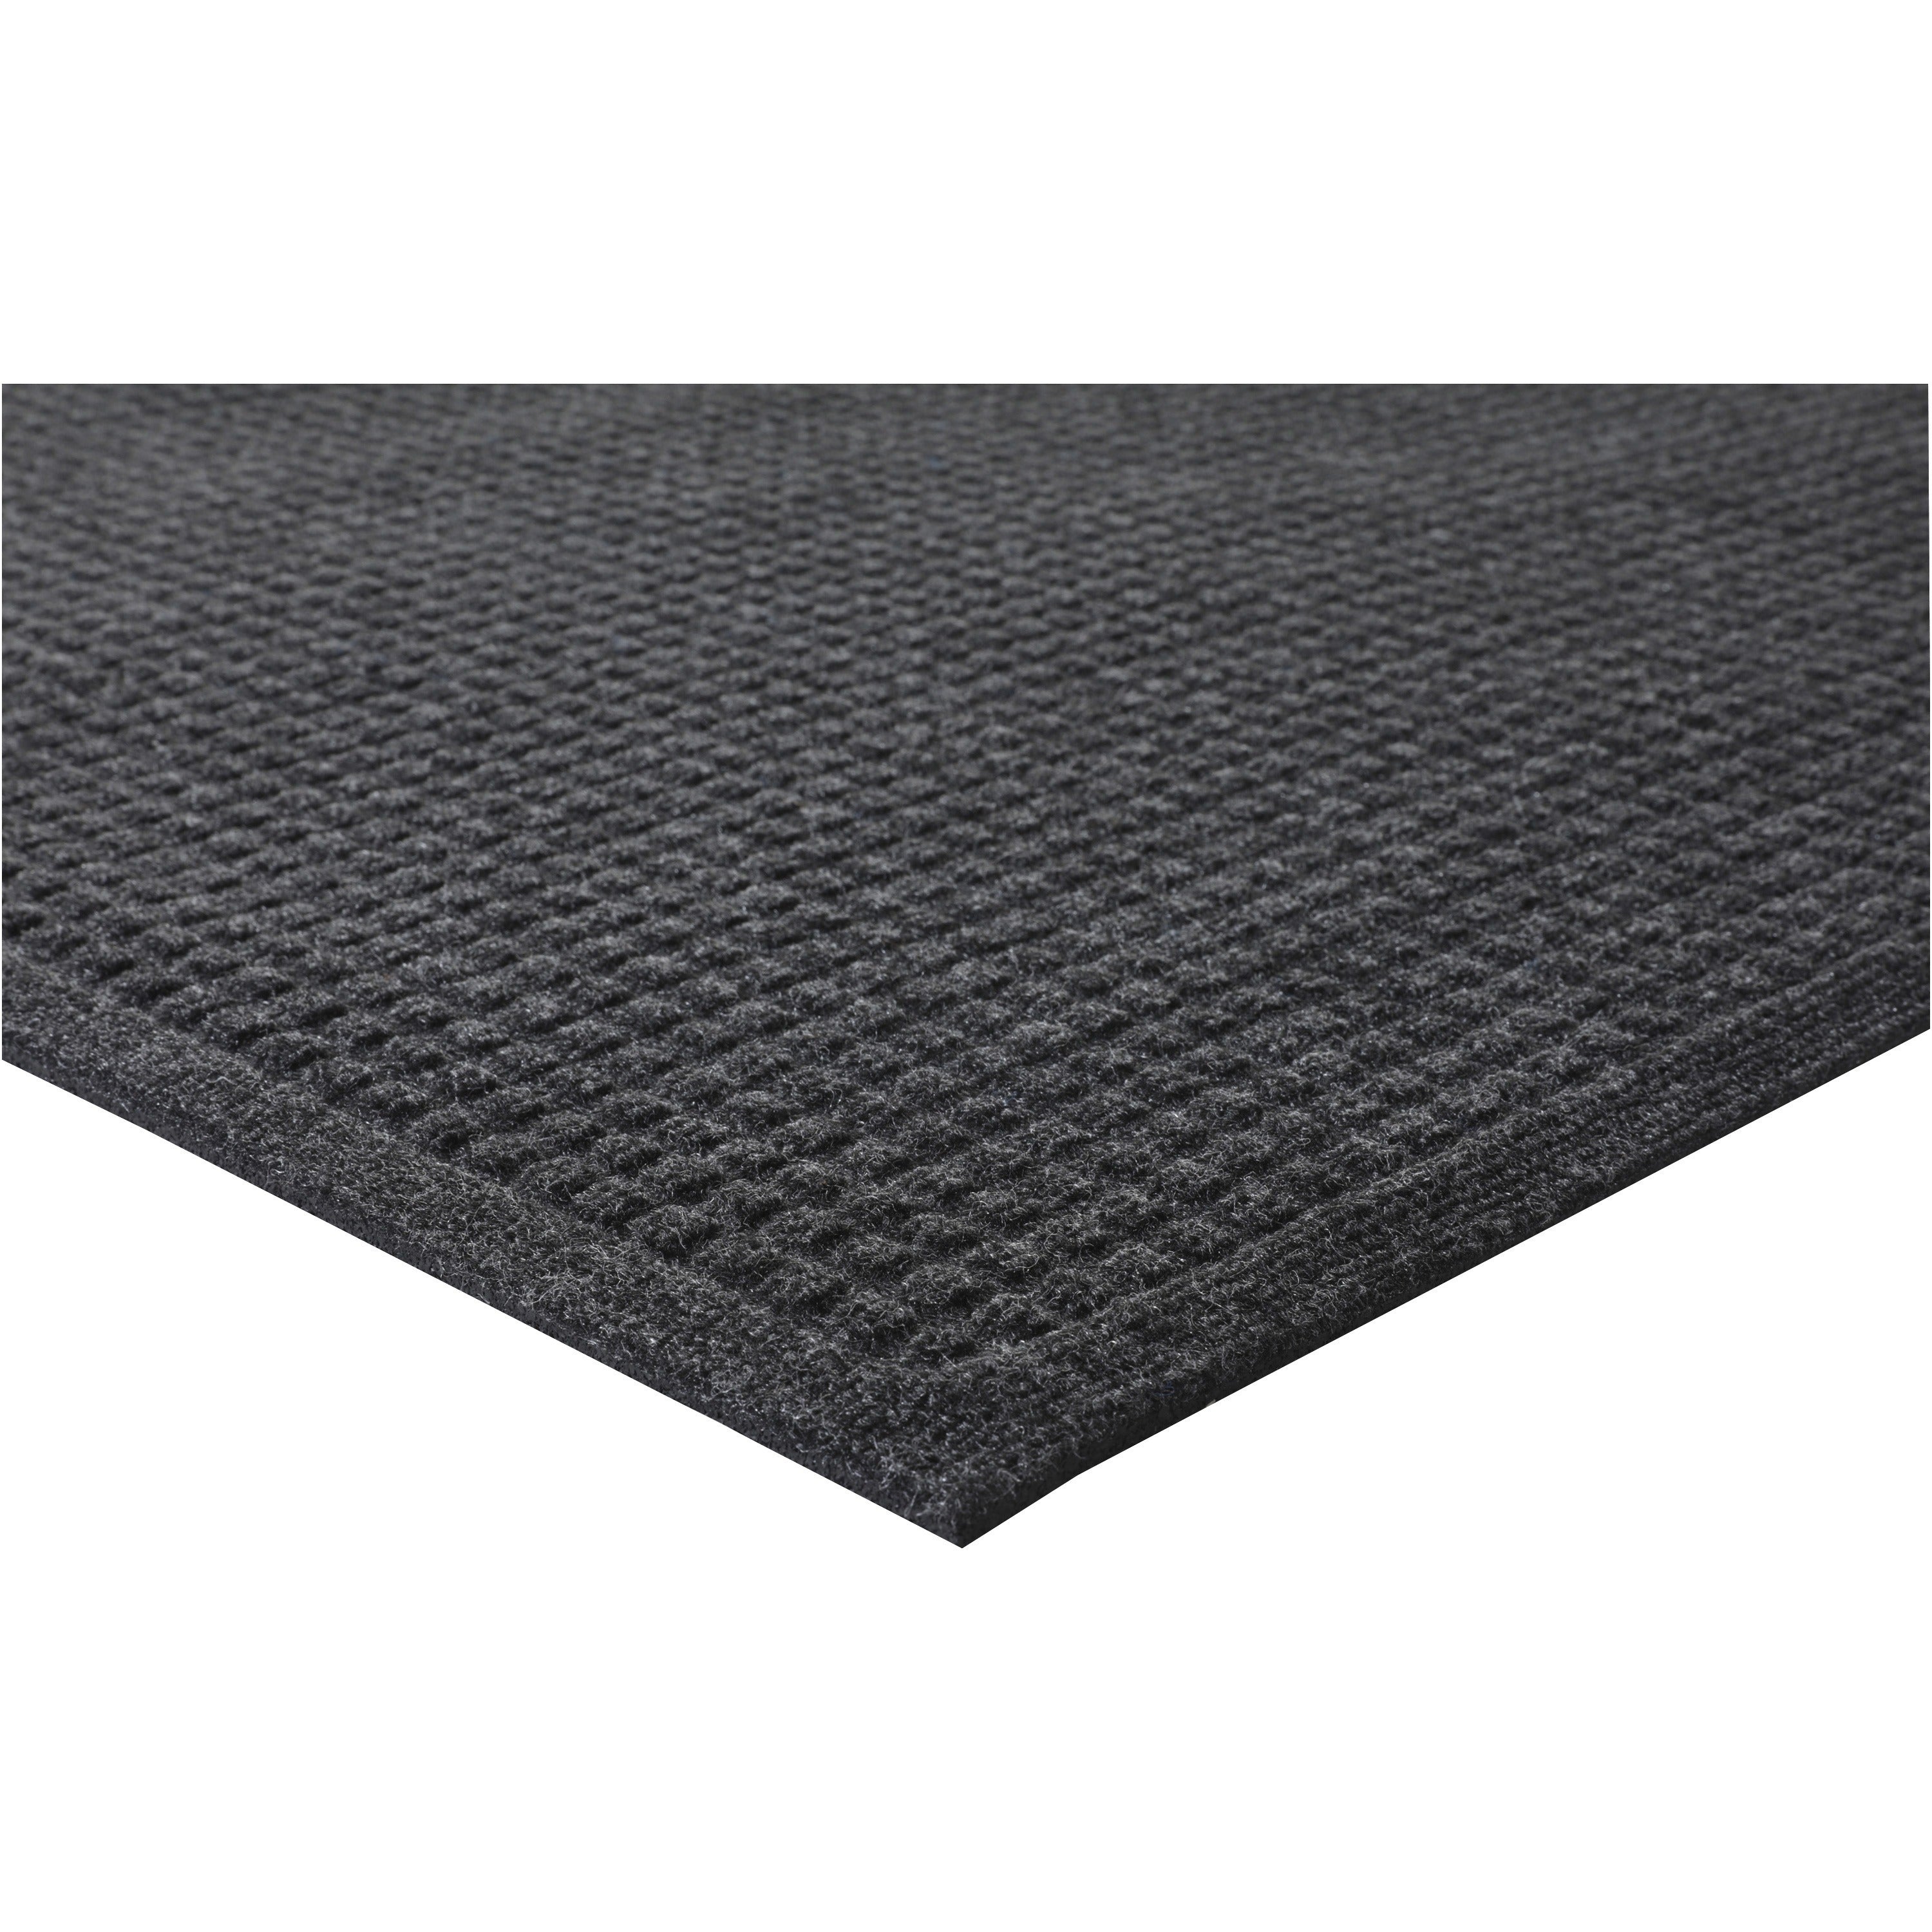 Genuine Joe EcoGuard Indoor Wiper Floor Mats - Indoor - 36" Length x 24" Width - Plastic, Rubber - Charcoal Gray - 1Each - 